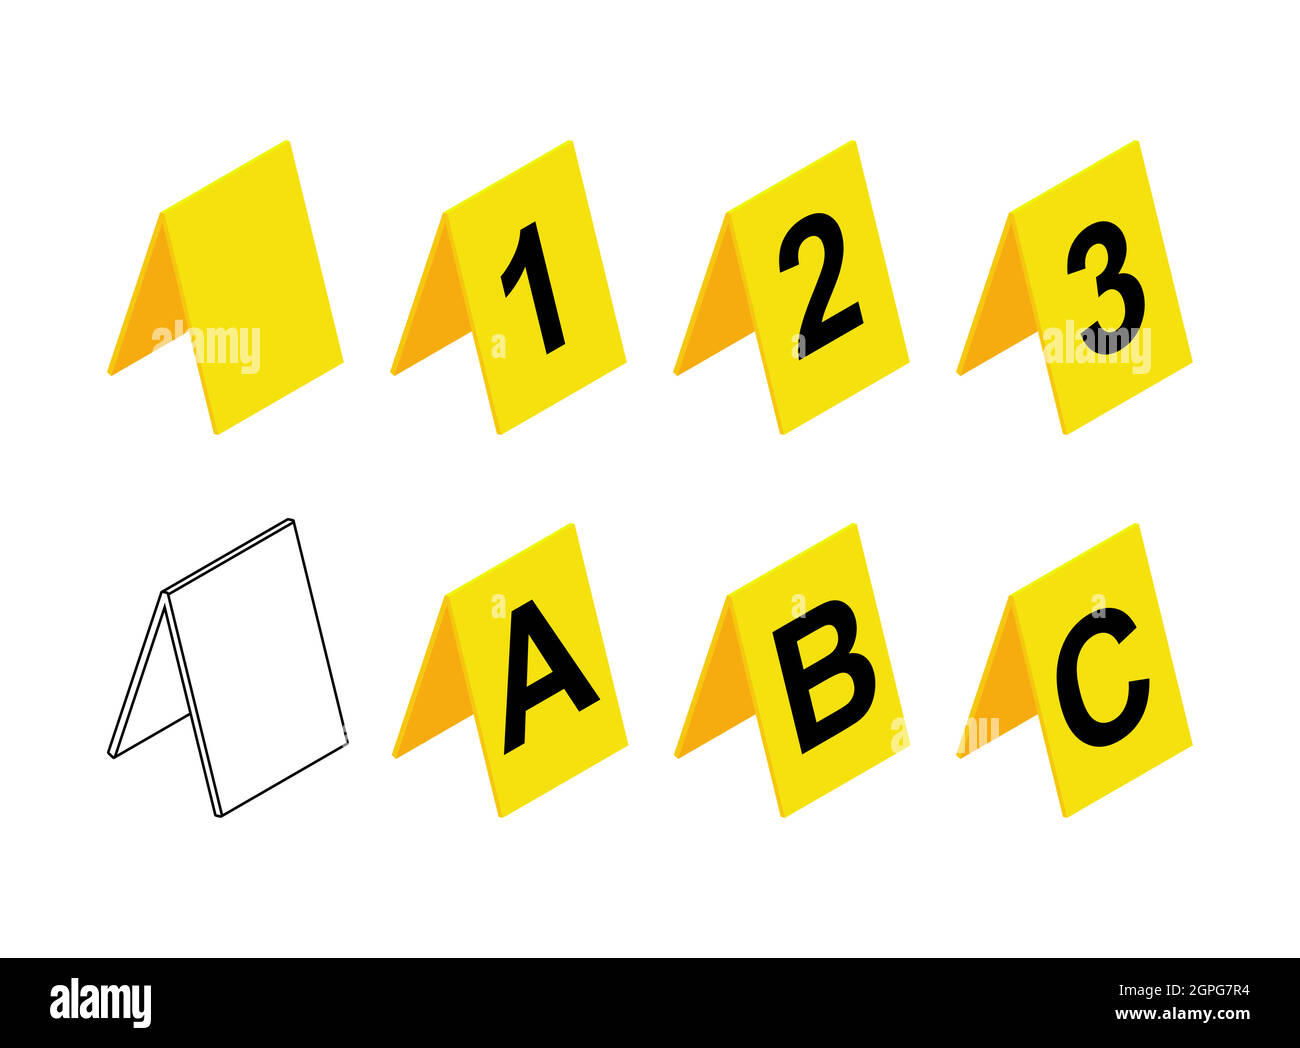 Design mit Markierungen für den Tatort. Gelbes Prüfungssymbol aus Kunststoff mit den Buchstaben A, B, C und der Nummer 1,2,3. Enthält auch ein leeres oder leeres Symbol. Vektordarstellung auf weißem Hintergrund isoliert. Stock Vektor